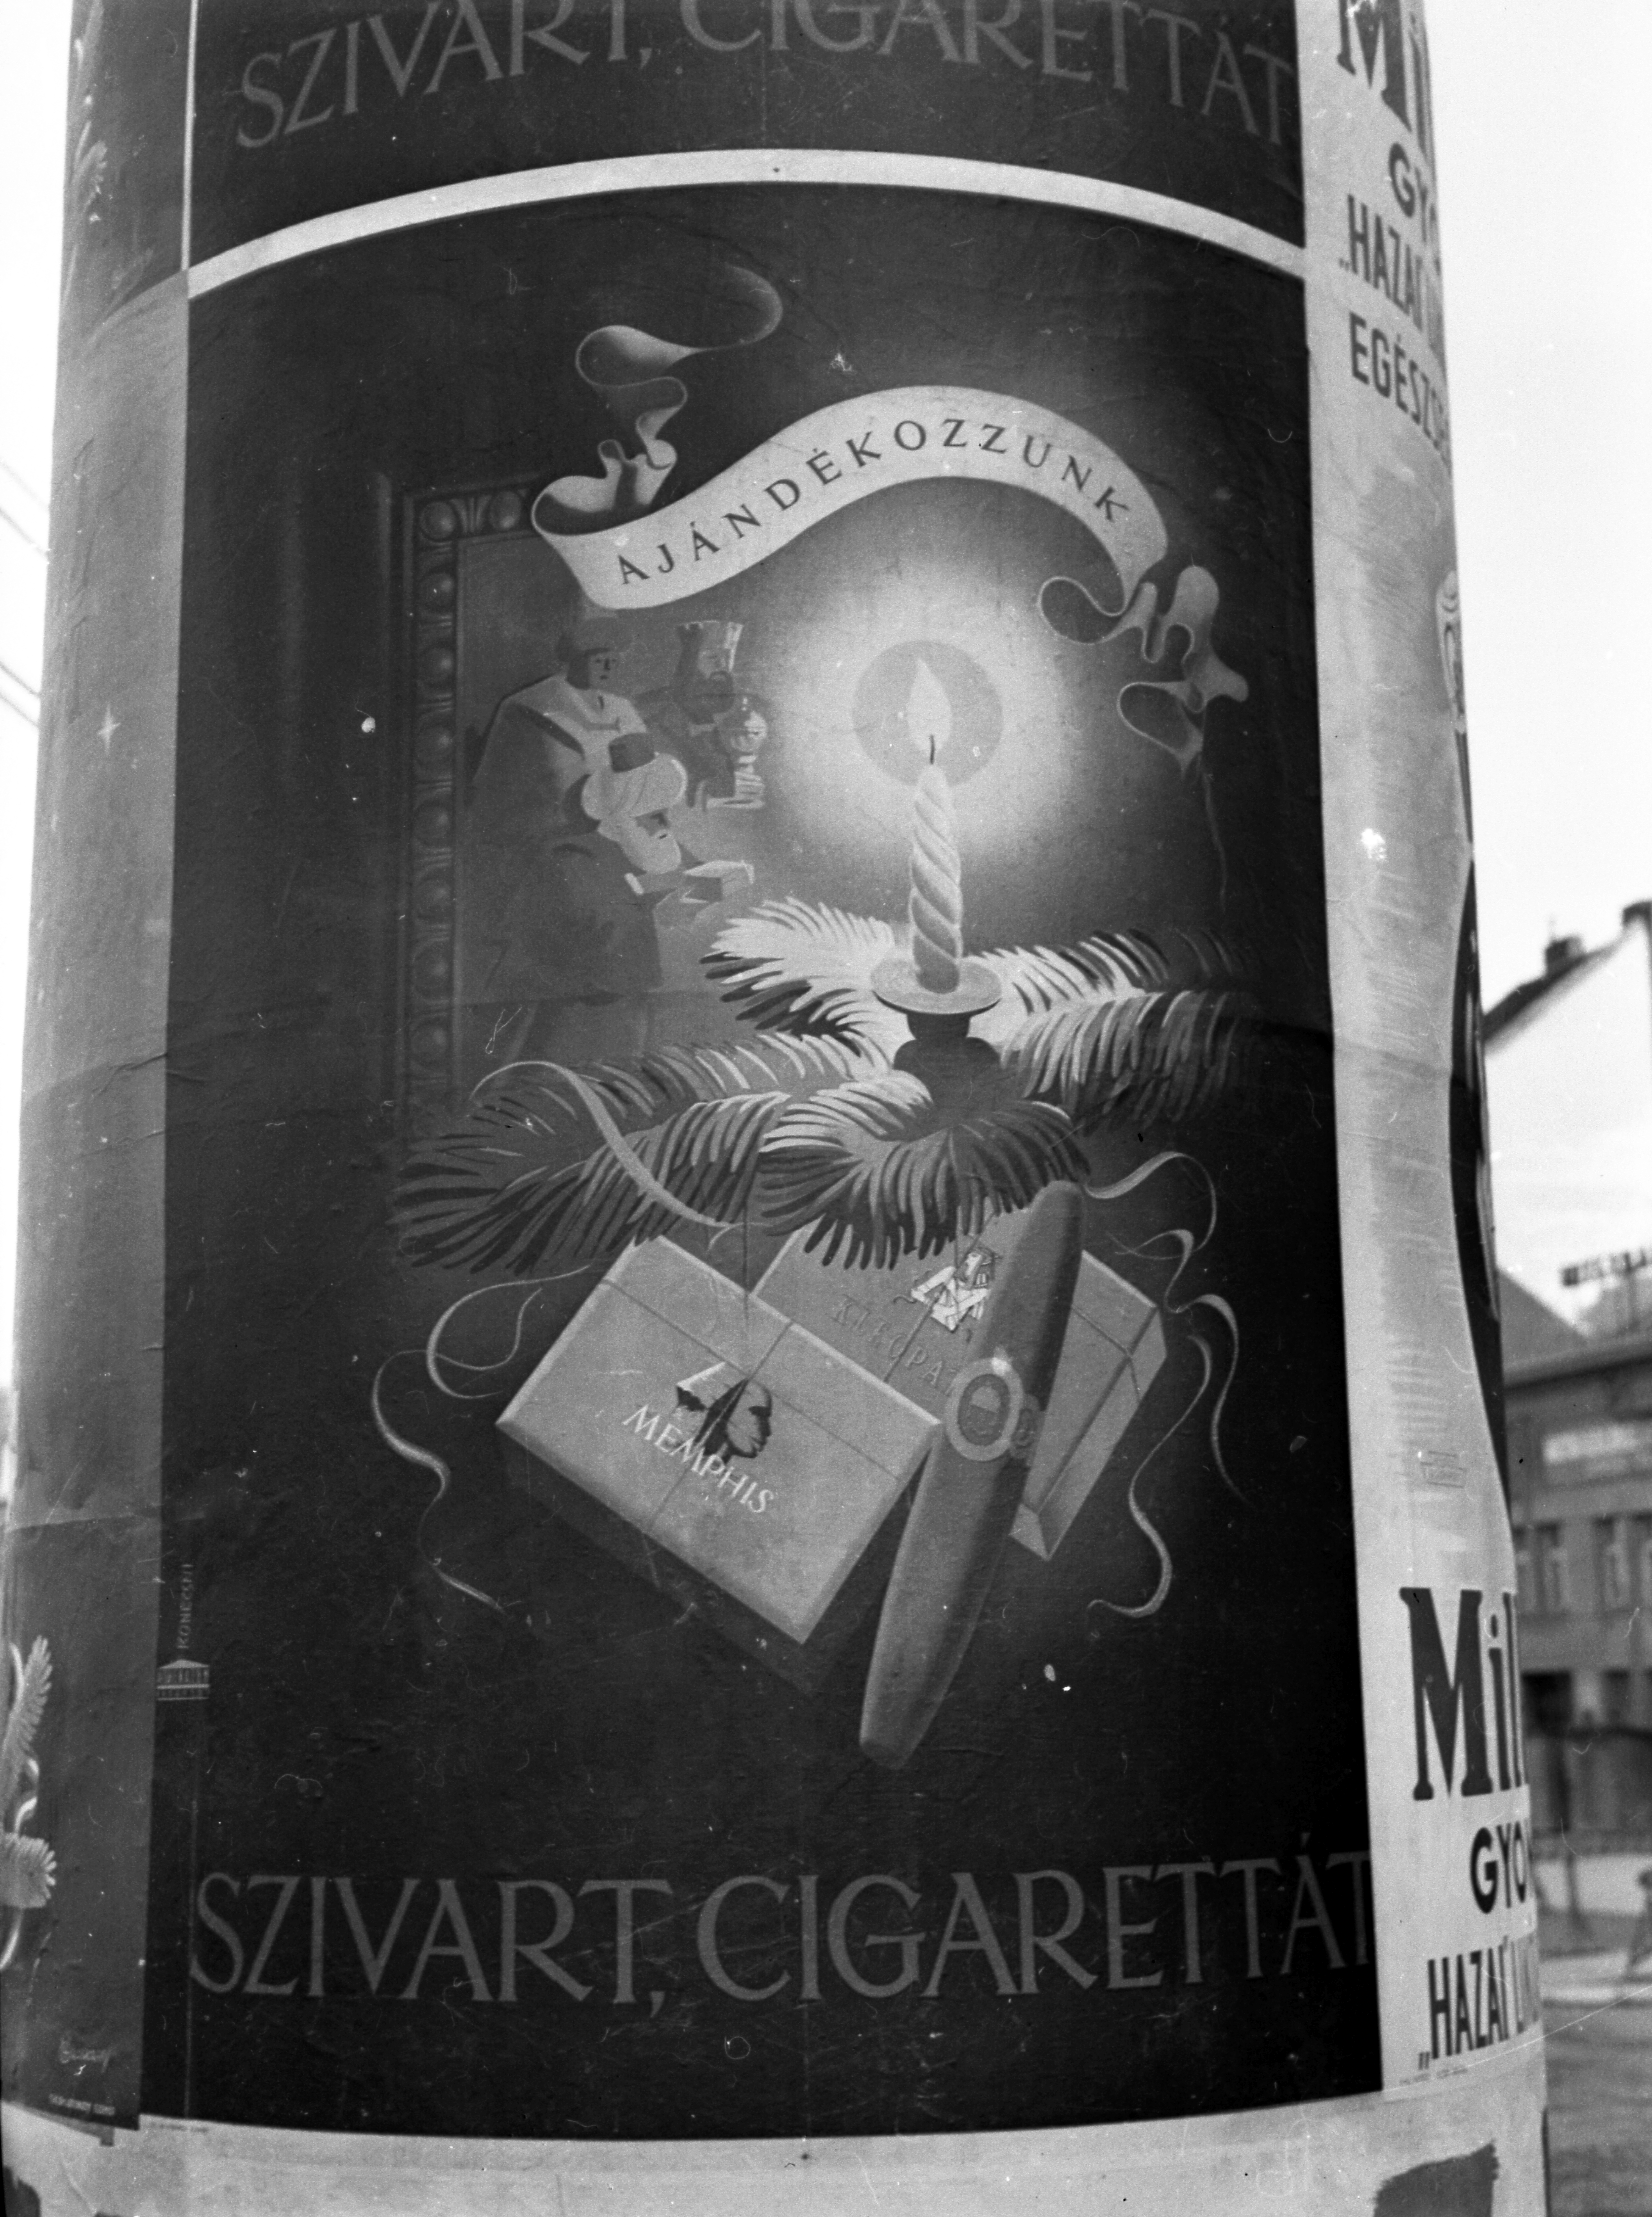 Fortepan / Lissák Tivadar-Cigaretta és szivarreklám 1941-ben a budapesti Széna téren. #71762